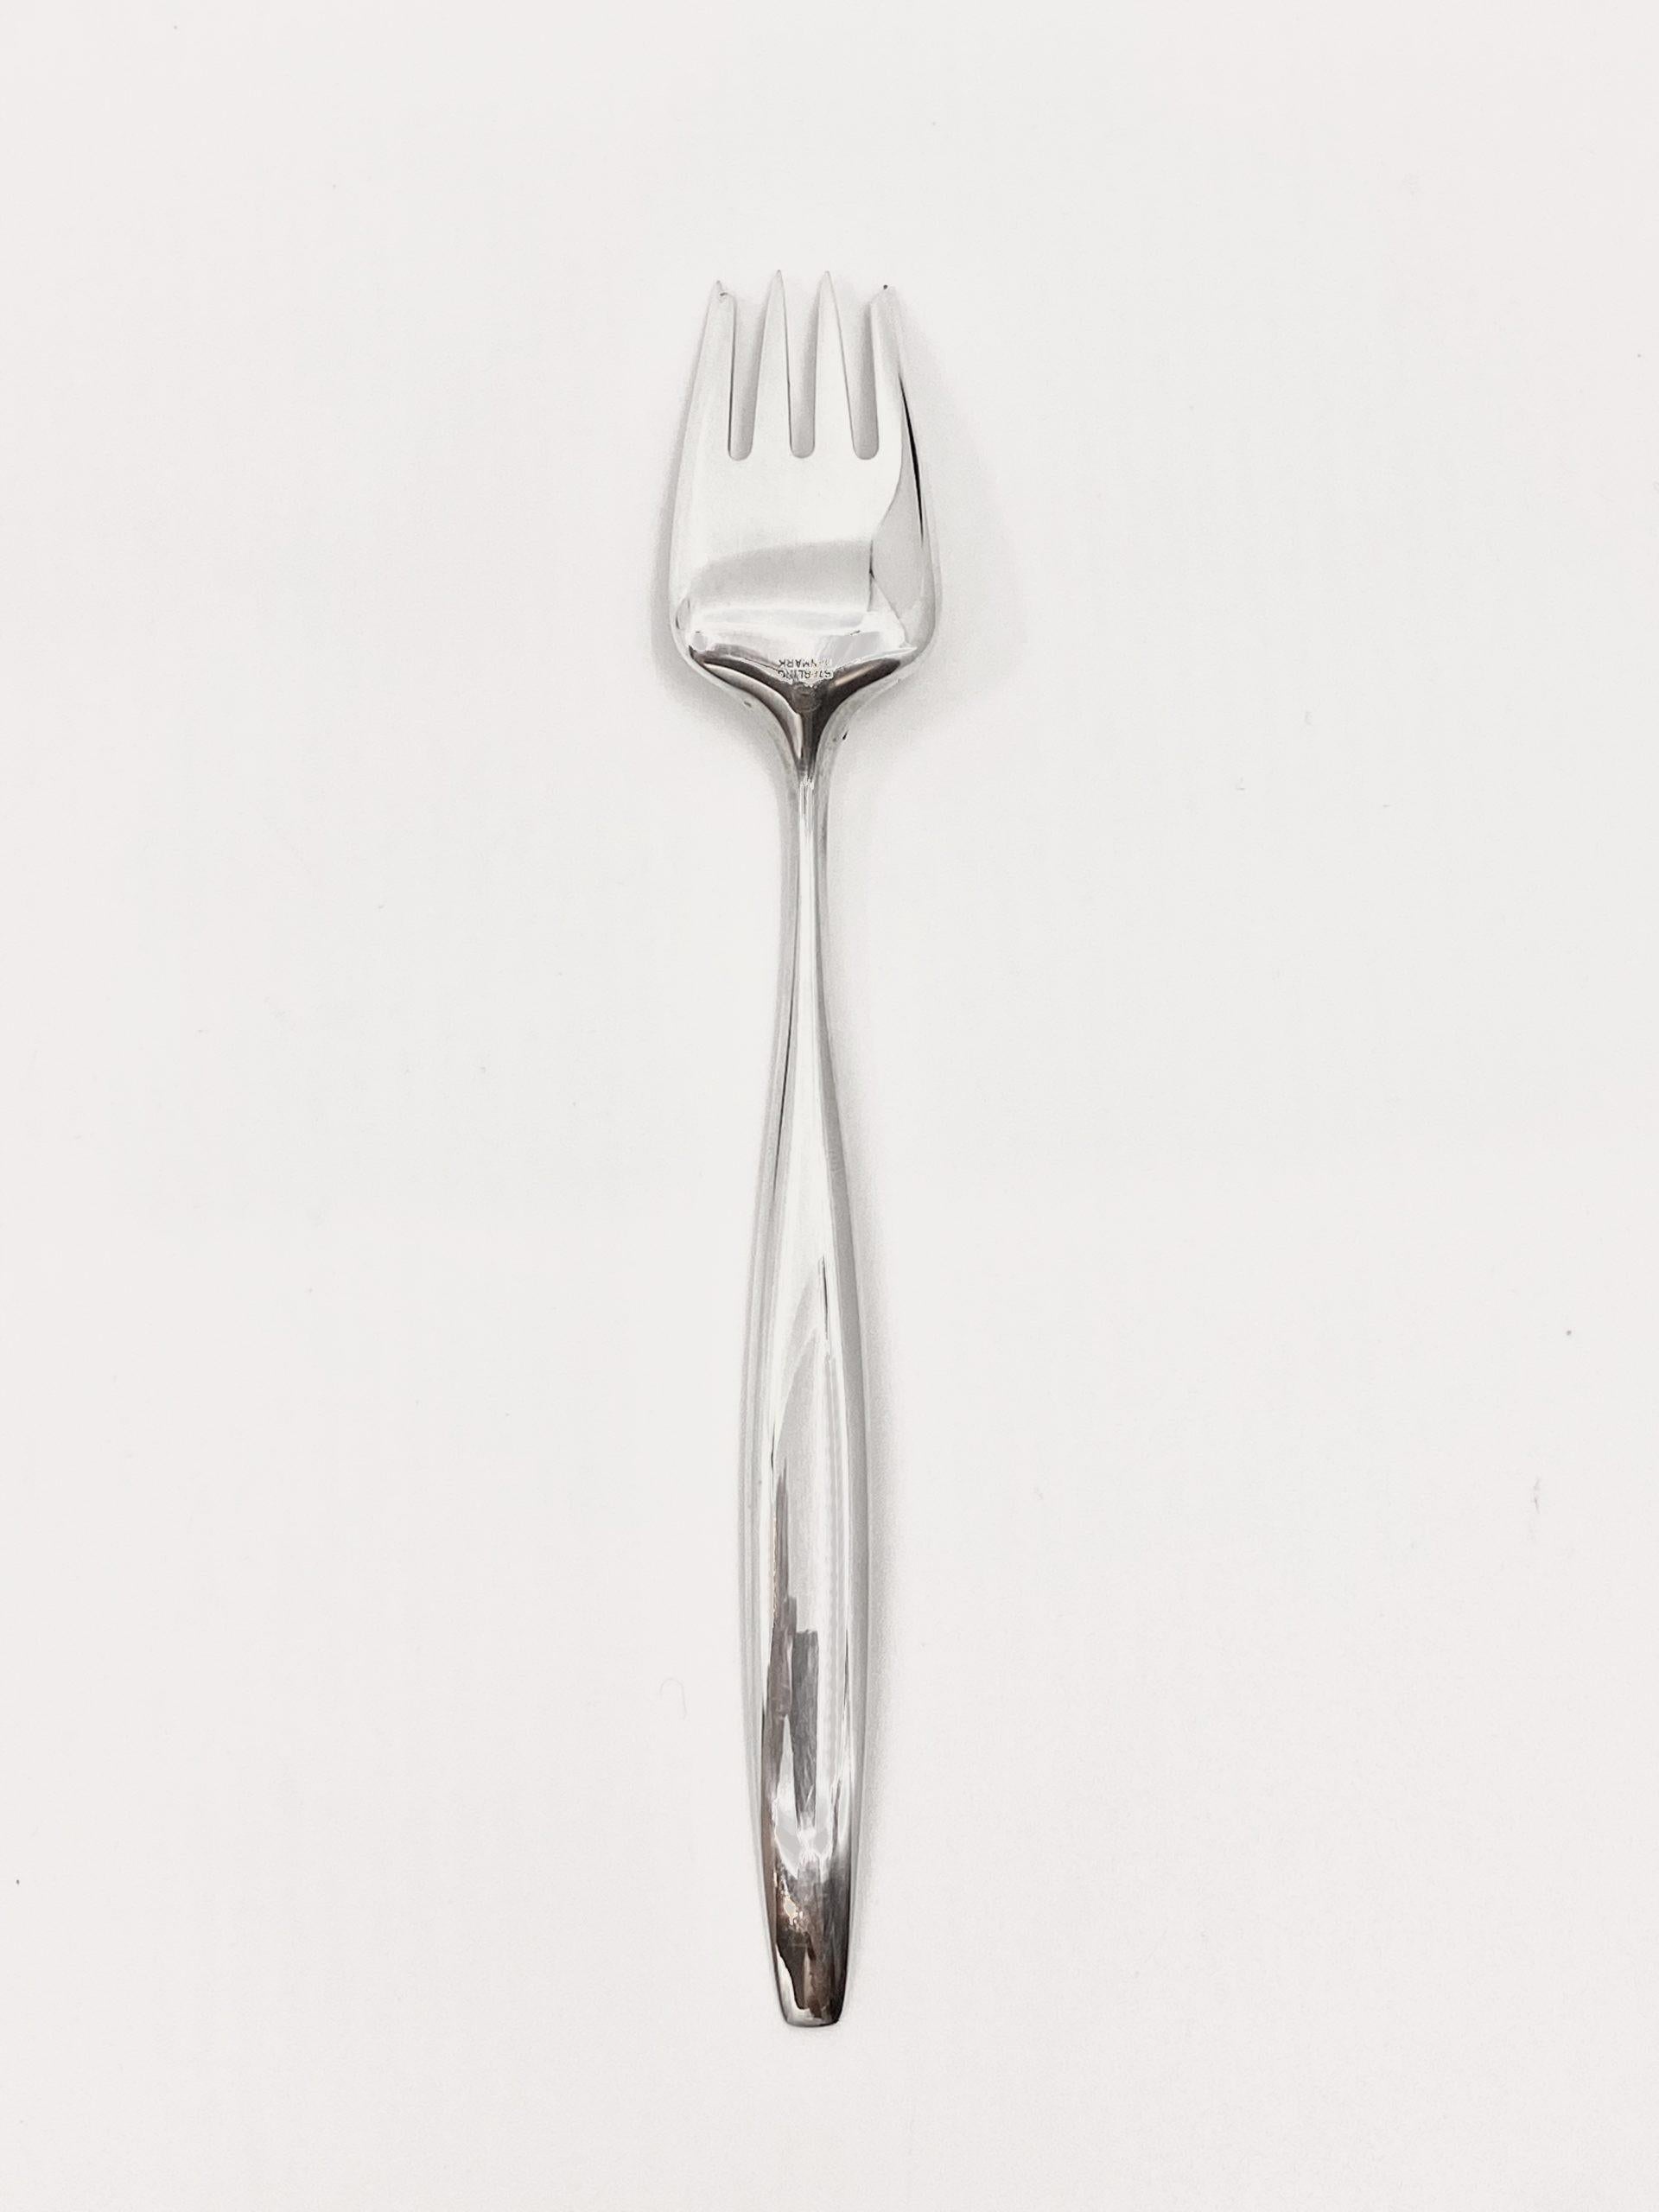 Fourchette à salade/poisson en argent sterling de Georg Jensen, article 041/061 dans le motif Cyprès, design #99 par Tias Eckhoff. Dans le motif Cyprès, plusieurs pièces sont à double fonction, dans ce cas, cette même fourchette est à la fois